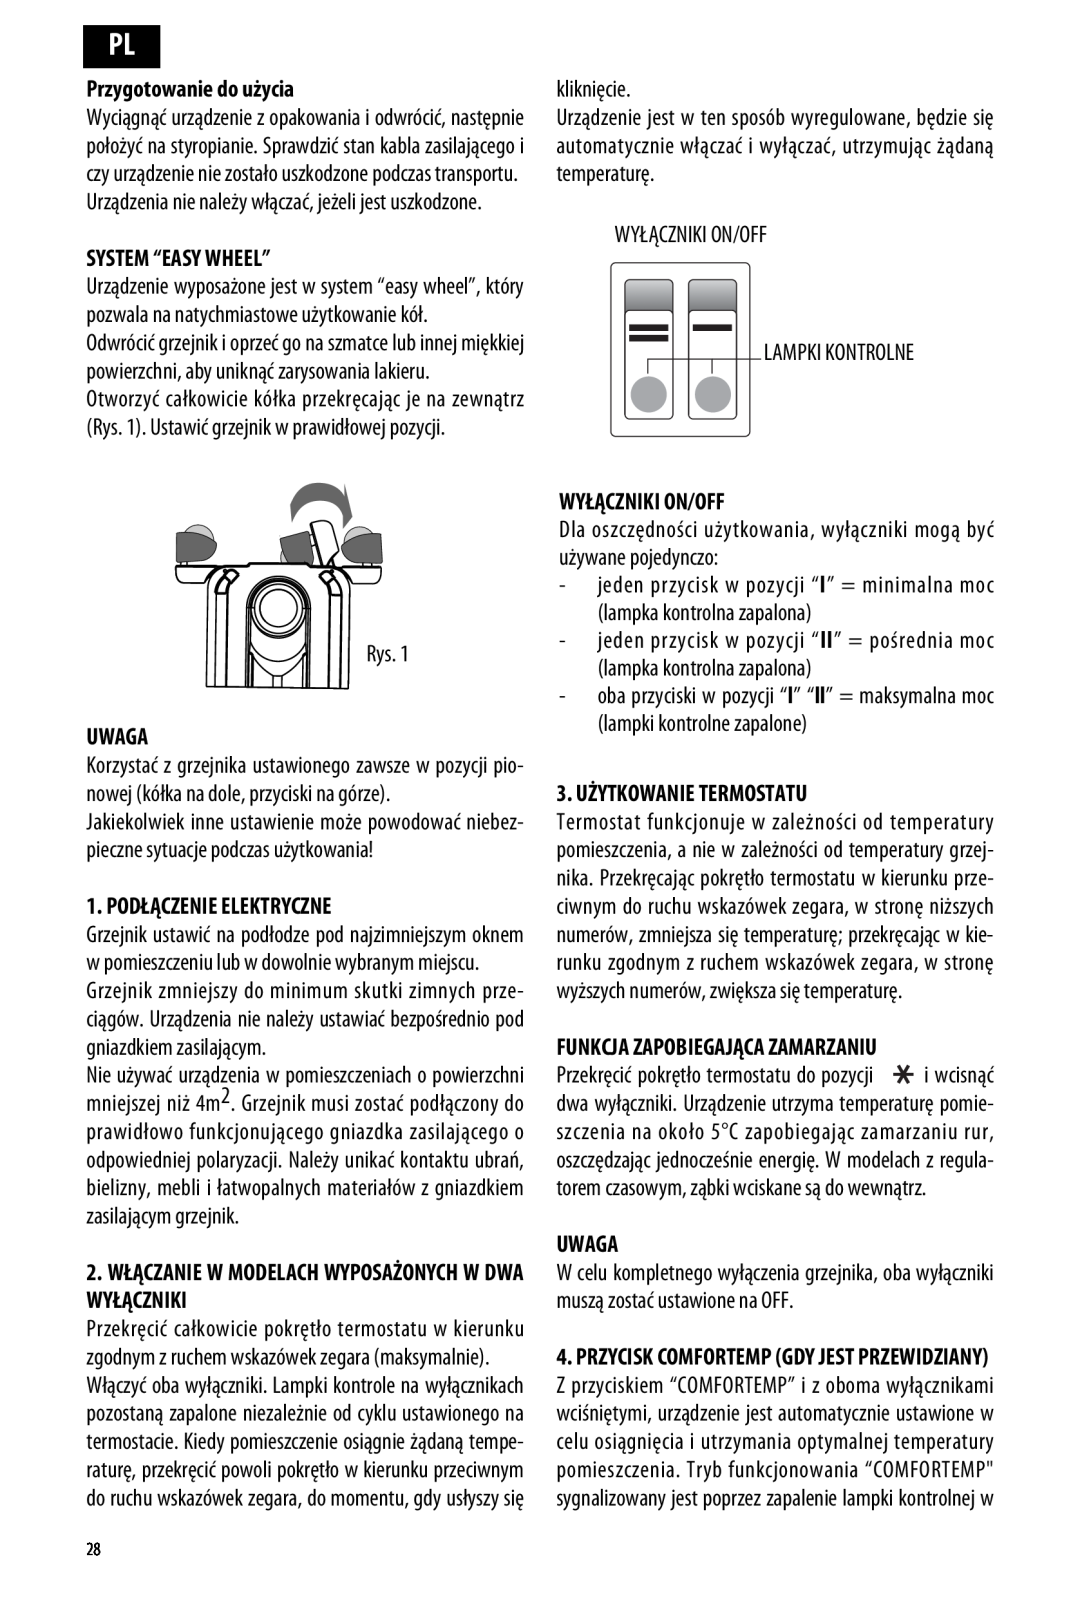 DeLonghi ME 10 manual Przygotowanie do użycia, System “Easy Wheel”, Uwaga, Podłączenie Elektryczne, Wyłączniki On/Off 